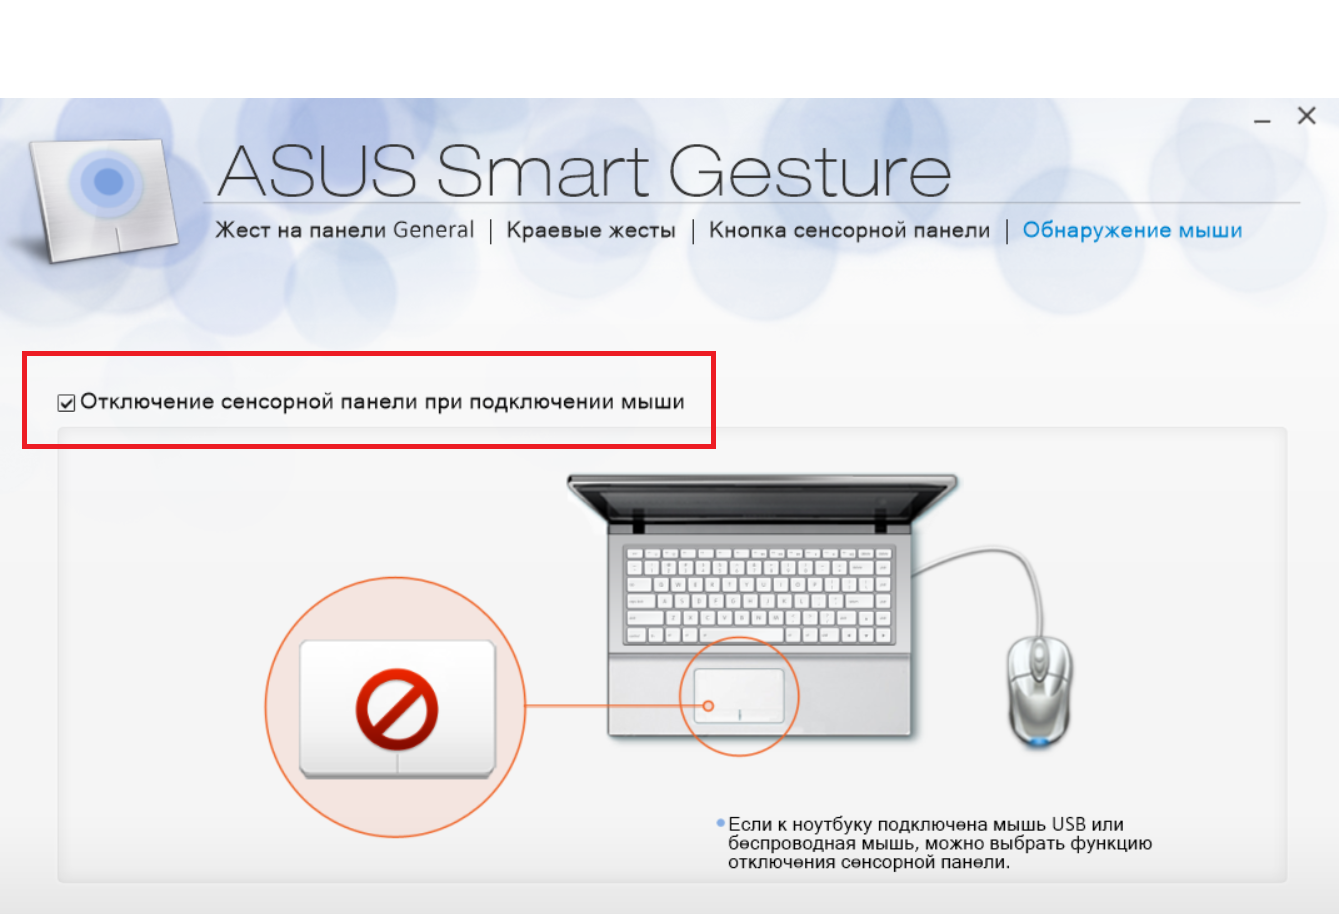 asus smart gestures windows 10 download